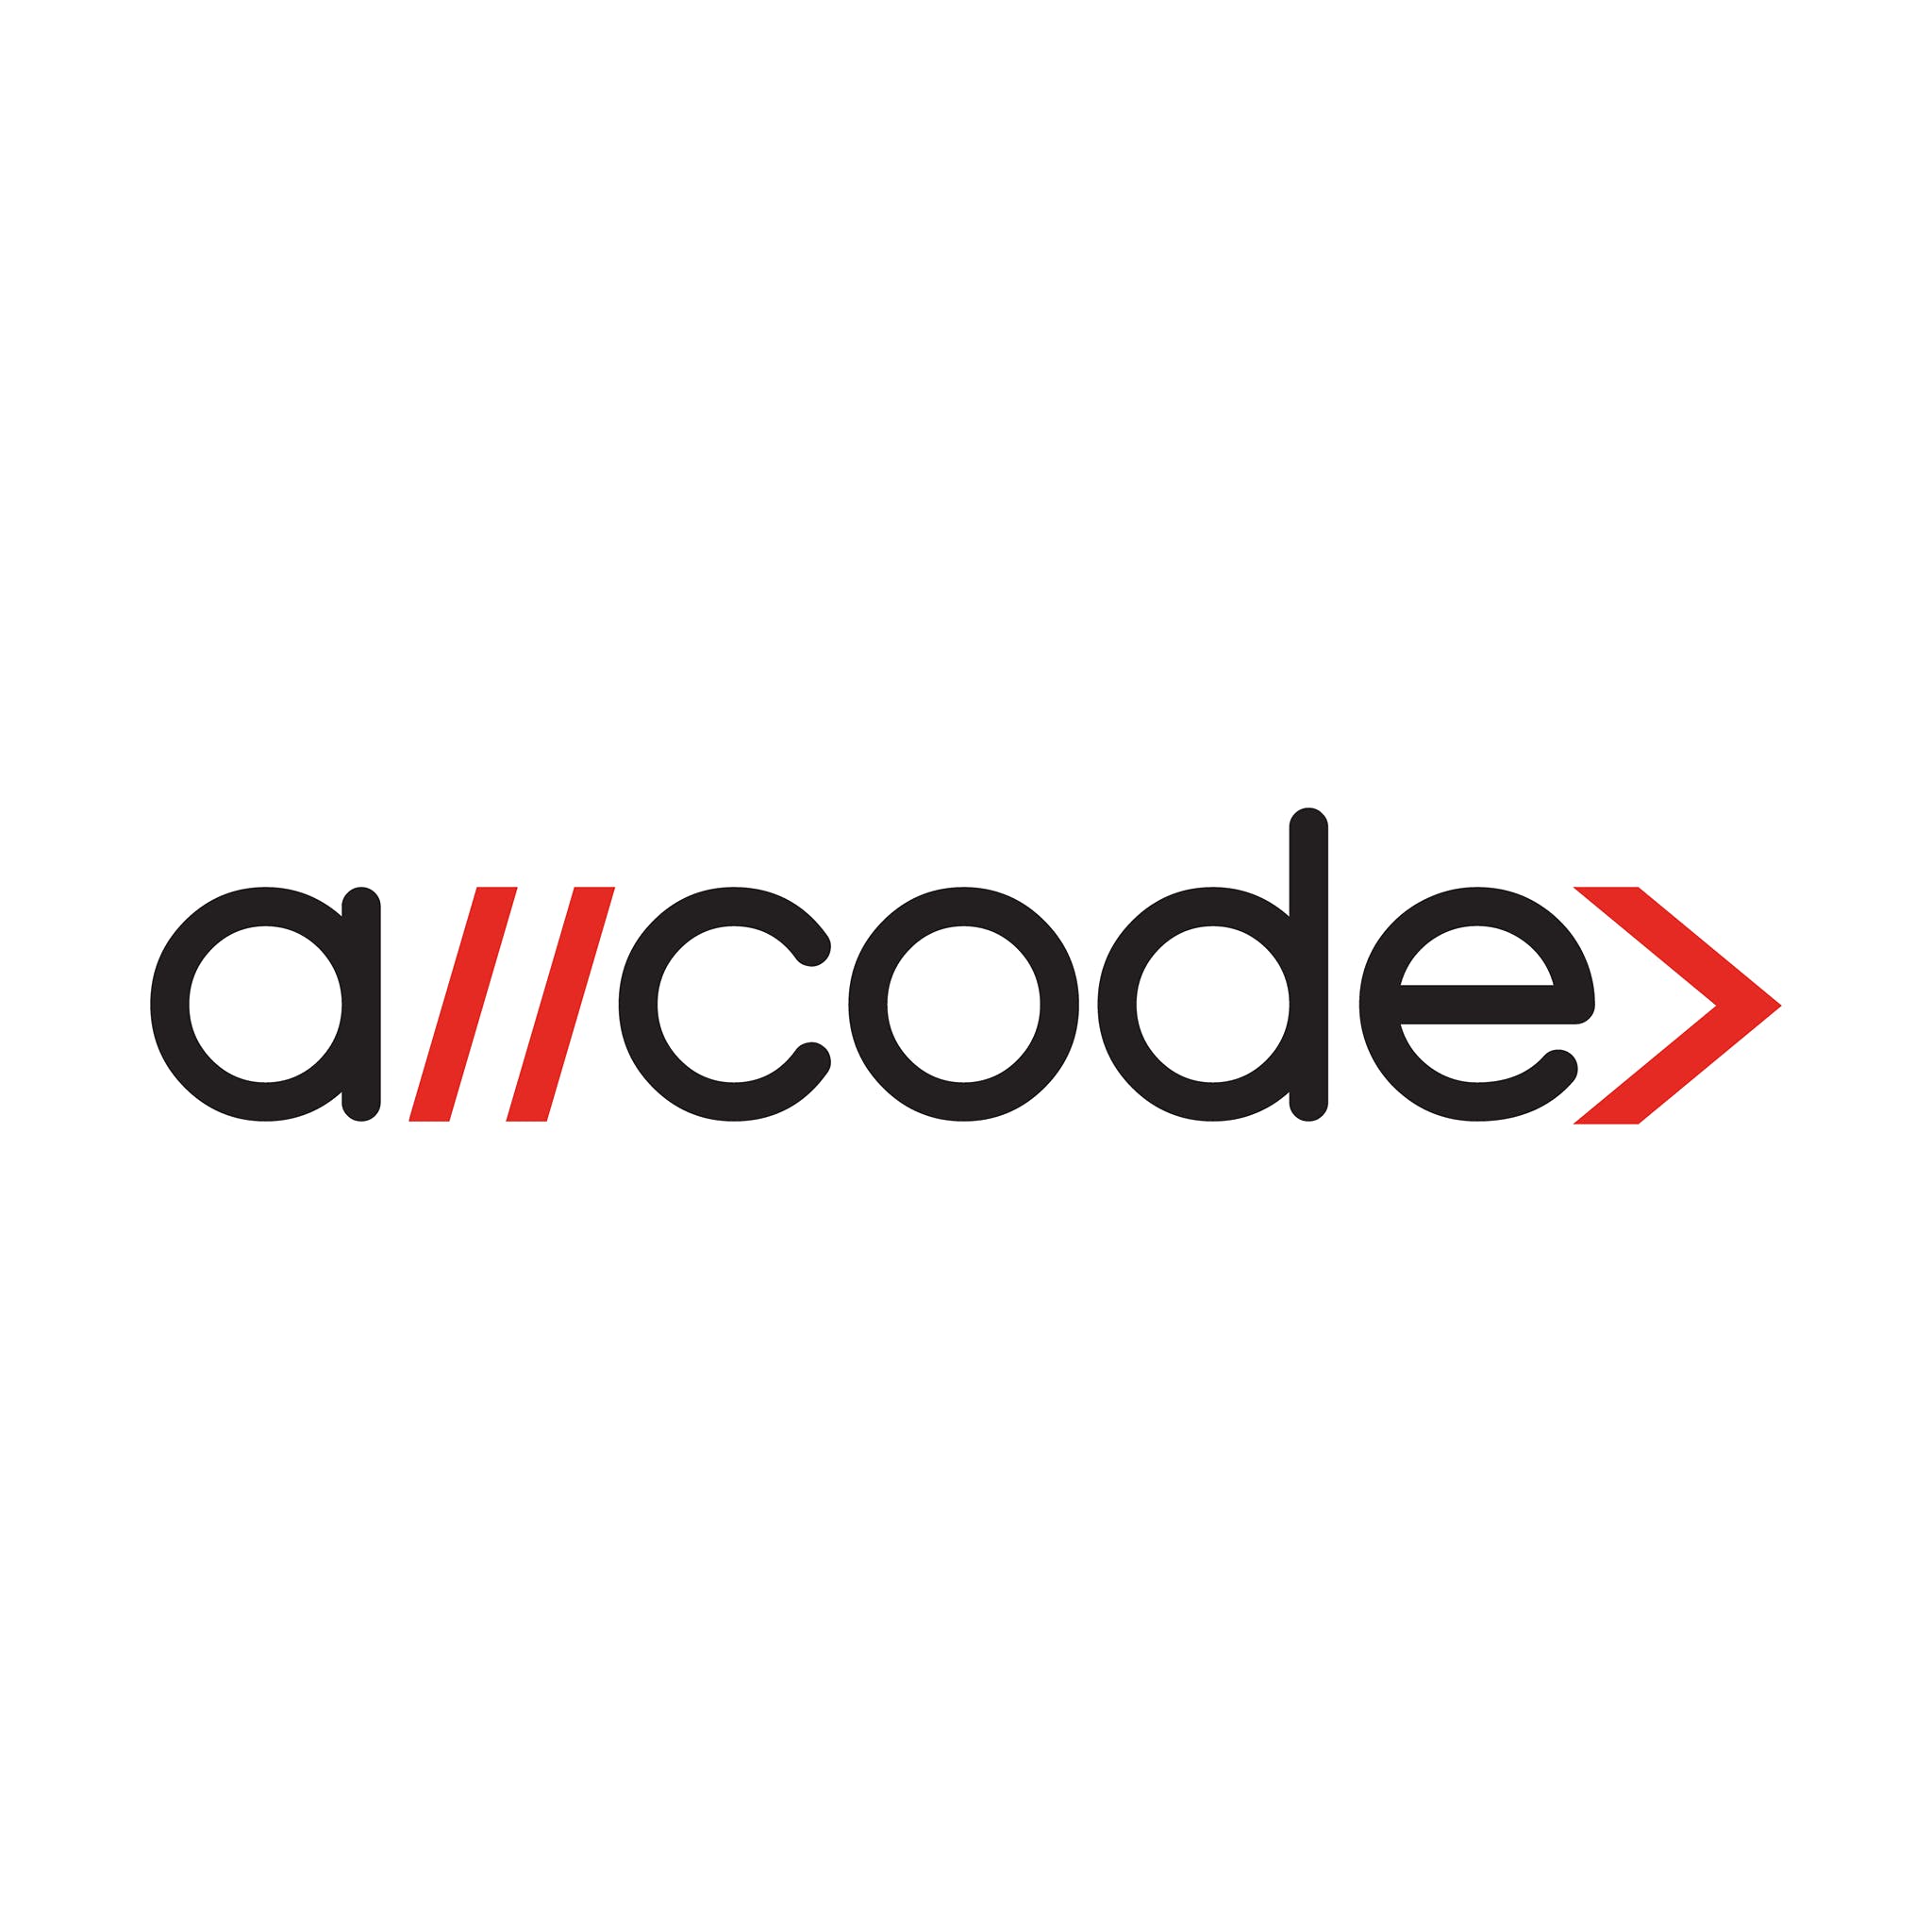 AllCode media 2